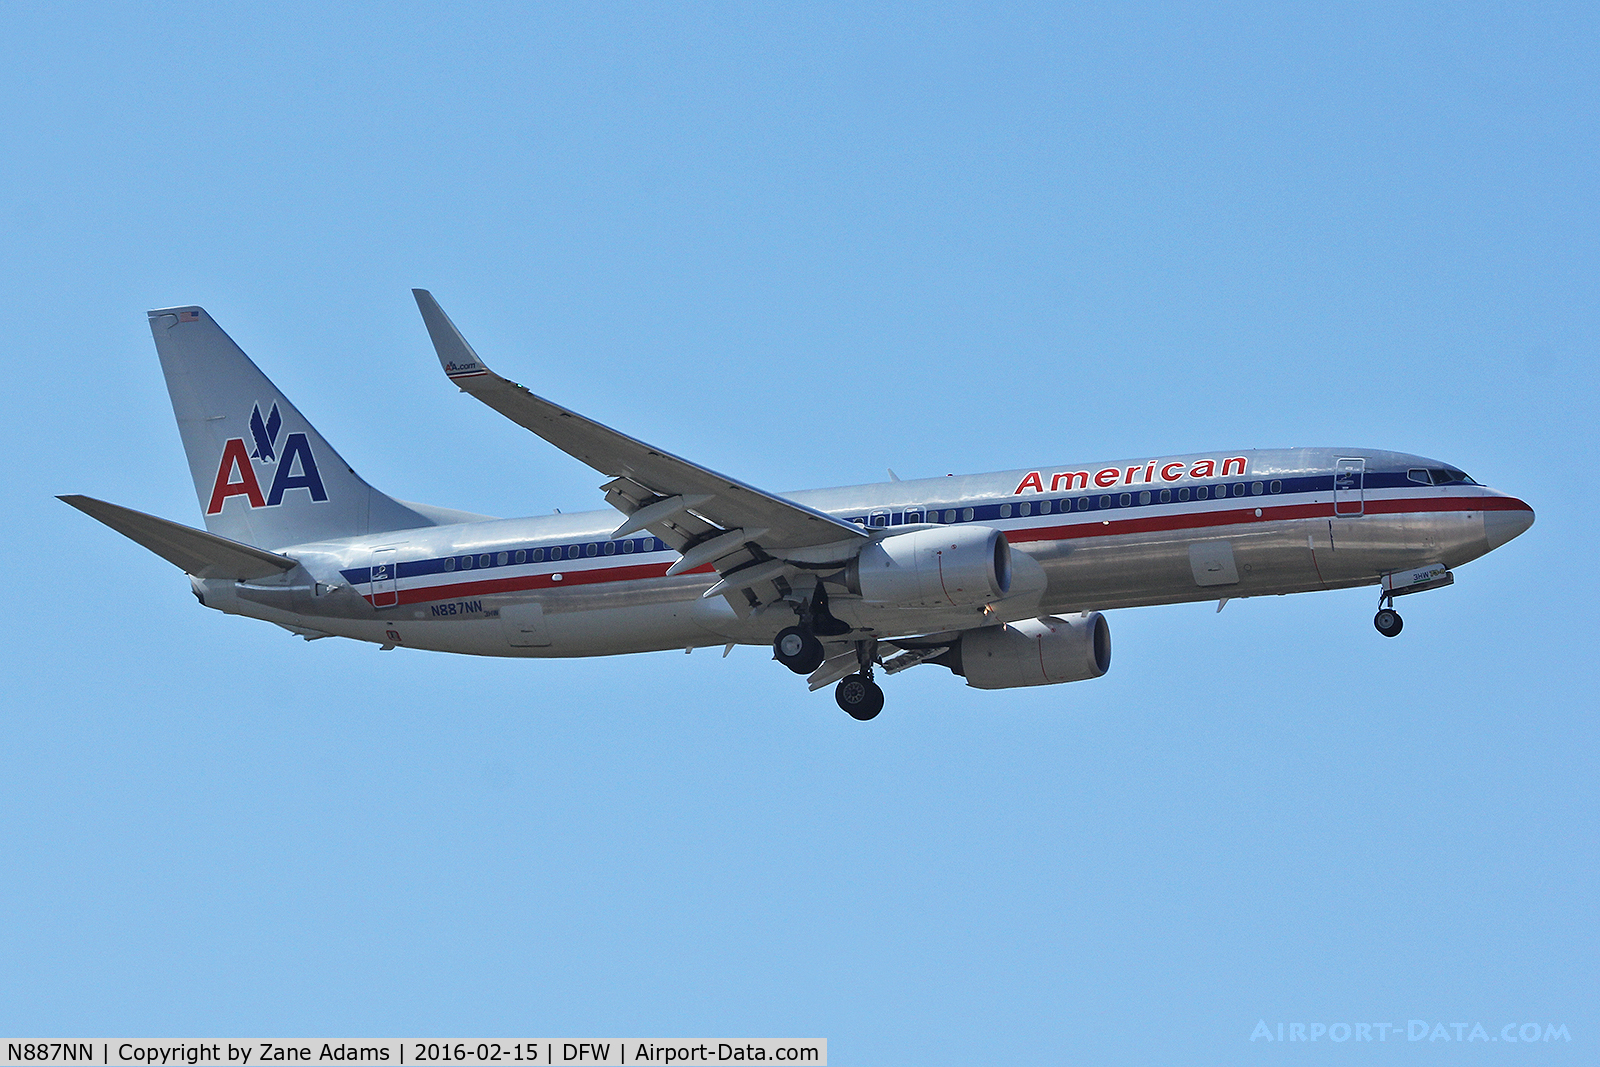 N887NN, 2012 Boeing 737-823 C/N 31141, Arriving at DFW Airport